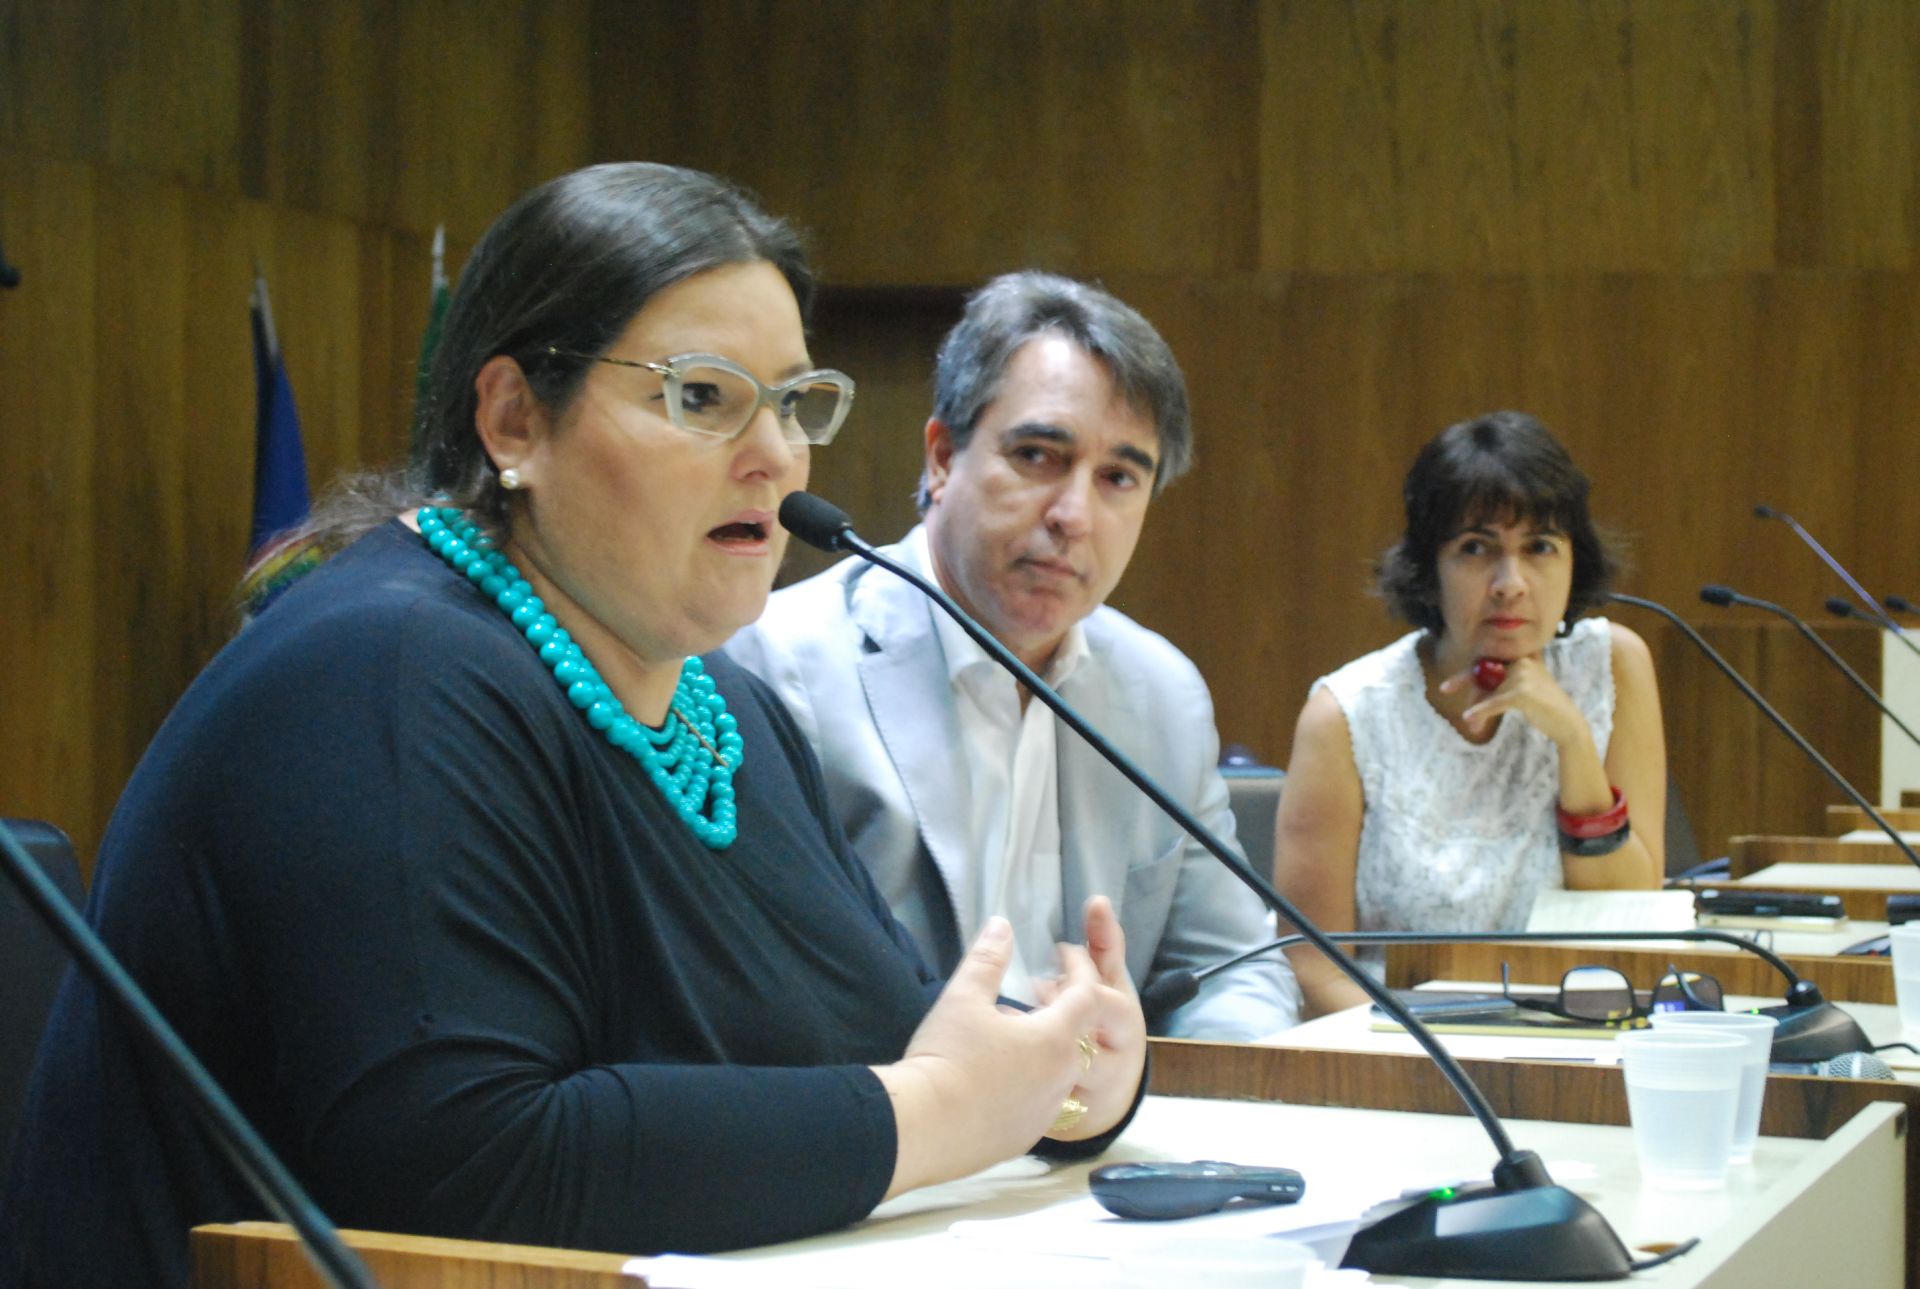 Juíza Ana Mota foi uma das palestrantes do evento realizado em parceria com a Secretaria Municipal da Mulher